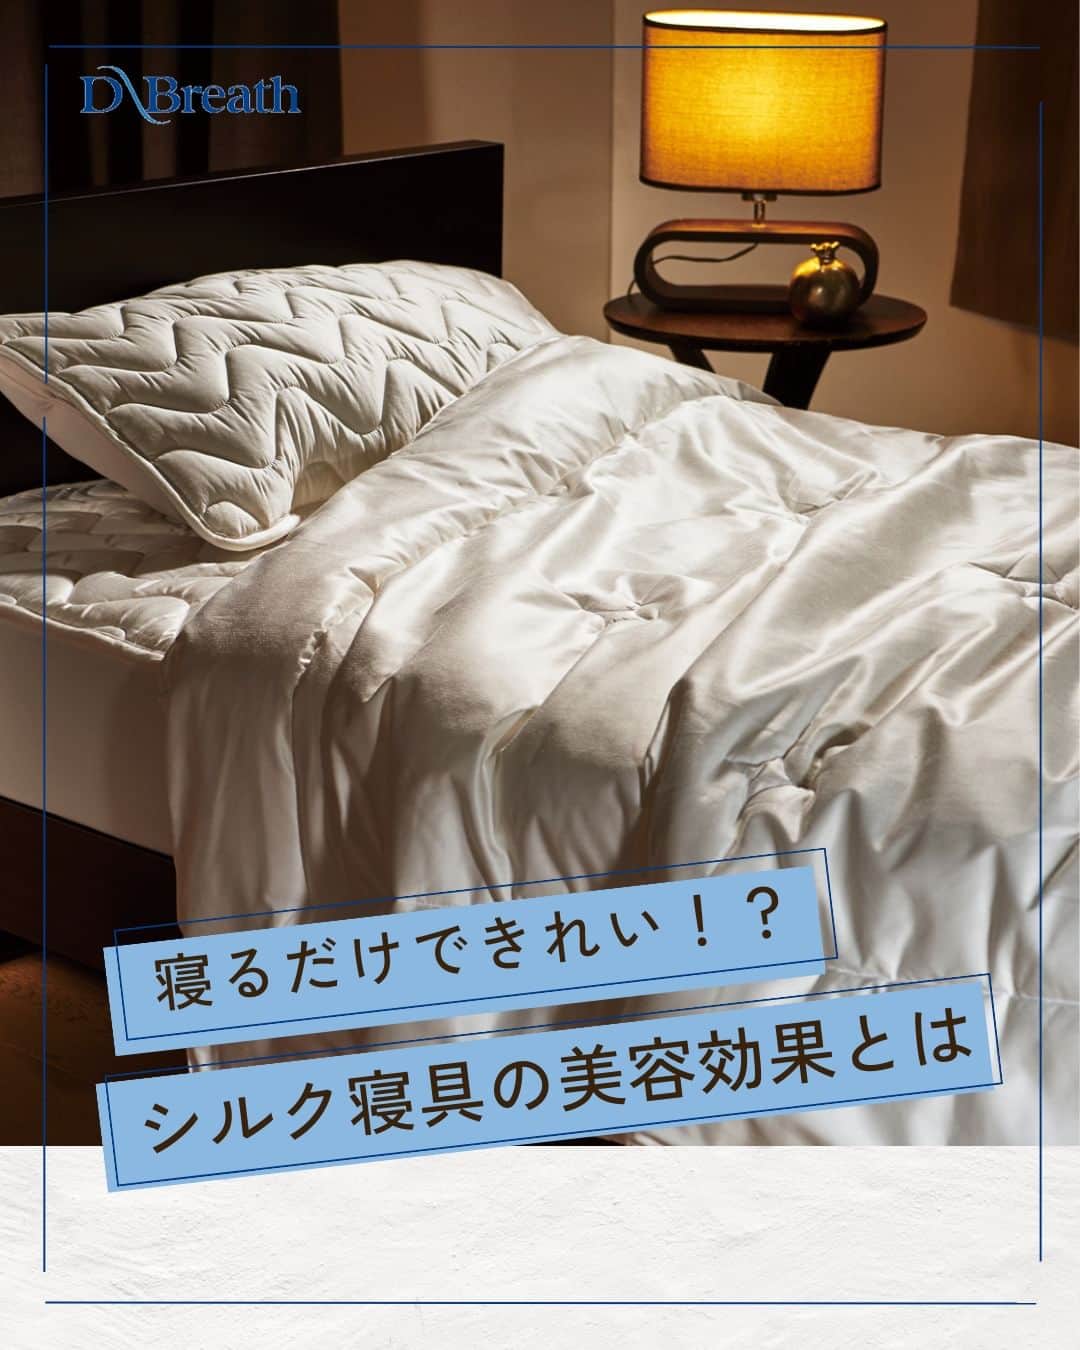 D-Breath Co., Ltd. のインスタグラム：「>>>続きをみる  こんばんは！ ディーブレスです！ @d_breath.co.jp  寝てるだけでキレイになれる？ シルク寝具の美容効果とは😮✨  シルクは上質な睡眠をとるためには最適な素材の1つなのです！  健康で豊かに暮らすためには睡眠は欠かすことはできませんよね😊 なぜ、シルクがいいのか？ 美容や健康に関わるおすすめの理由があります🕊  ぜひお試しください…！  ┄ ┄ ┄ ┄ ┄ ┄ ┄ ┄ ┄ ┄ ┄ ┄ ┄  どこよりも気持ちいい寝具を目指す🌙  ディーブレスという社名は、 DEEP BREATH＝深呼吸という言葉から生まれました。  あわただしい暮らしの中で、深呼吸するように、 ゆったりとした時を過ごしていただきたいという想いから、 様々な心安らぐアイテムを開発しています。 ┄ ┄ ┄ ┄ ┄ ┄ ┄ ┄ ┄ ┄ ┄ ┄ ┄ このアカウントでは ・起きたばかりなのに身体がだるおも ・夜なかなか寝付けない ・朝スッキリ起きれない  という方に向けて 睡眠の知識を発信中！  ＼フォローして最上級の眠りを手に入れる／ @d_breath.co.jp  #自律神経 #睡眠 #睡眠の改善 #睡眠不足 #快眠 #更年期 #ストレス #疲労回復 #肩こり解消 #自律神経失調症 #自律神経ケア #自律神経を整える #ストレスケア #睡眠の質をあげる #ディーブレス #シルク ​#SILKSKINTSUMUGU #シルクスキンツムグ #美容効果 #上質な睡眠」